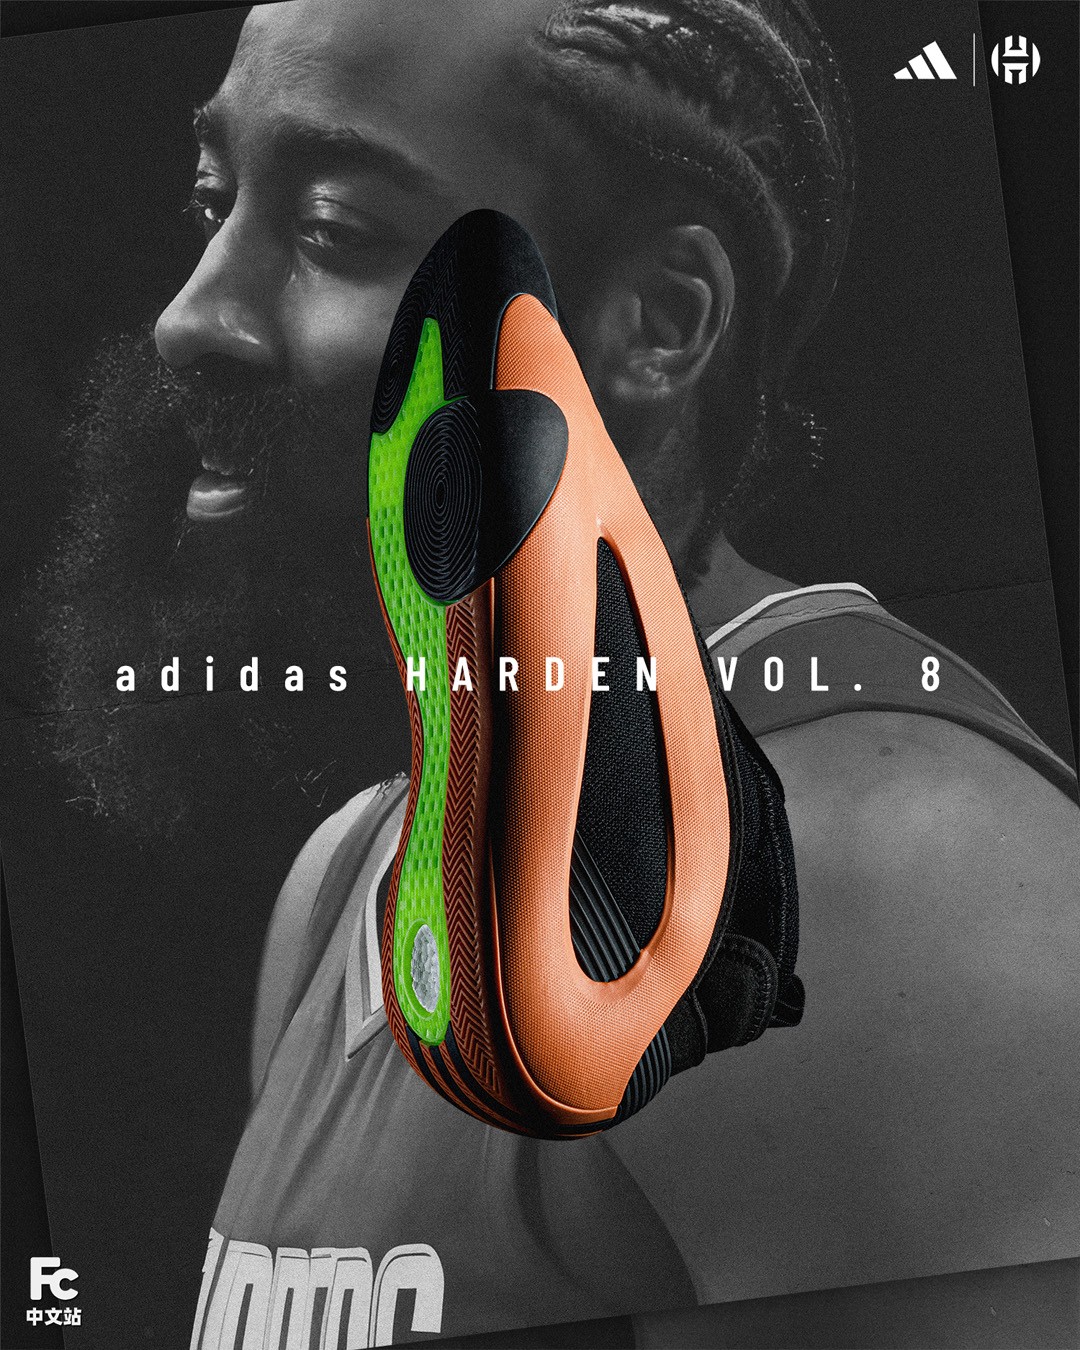 开箱,Harden Vol. 8,adidas  远超预期！「哈登 8」抢先开箱！这些 “隐藏升级” 太关键了！